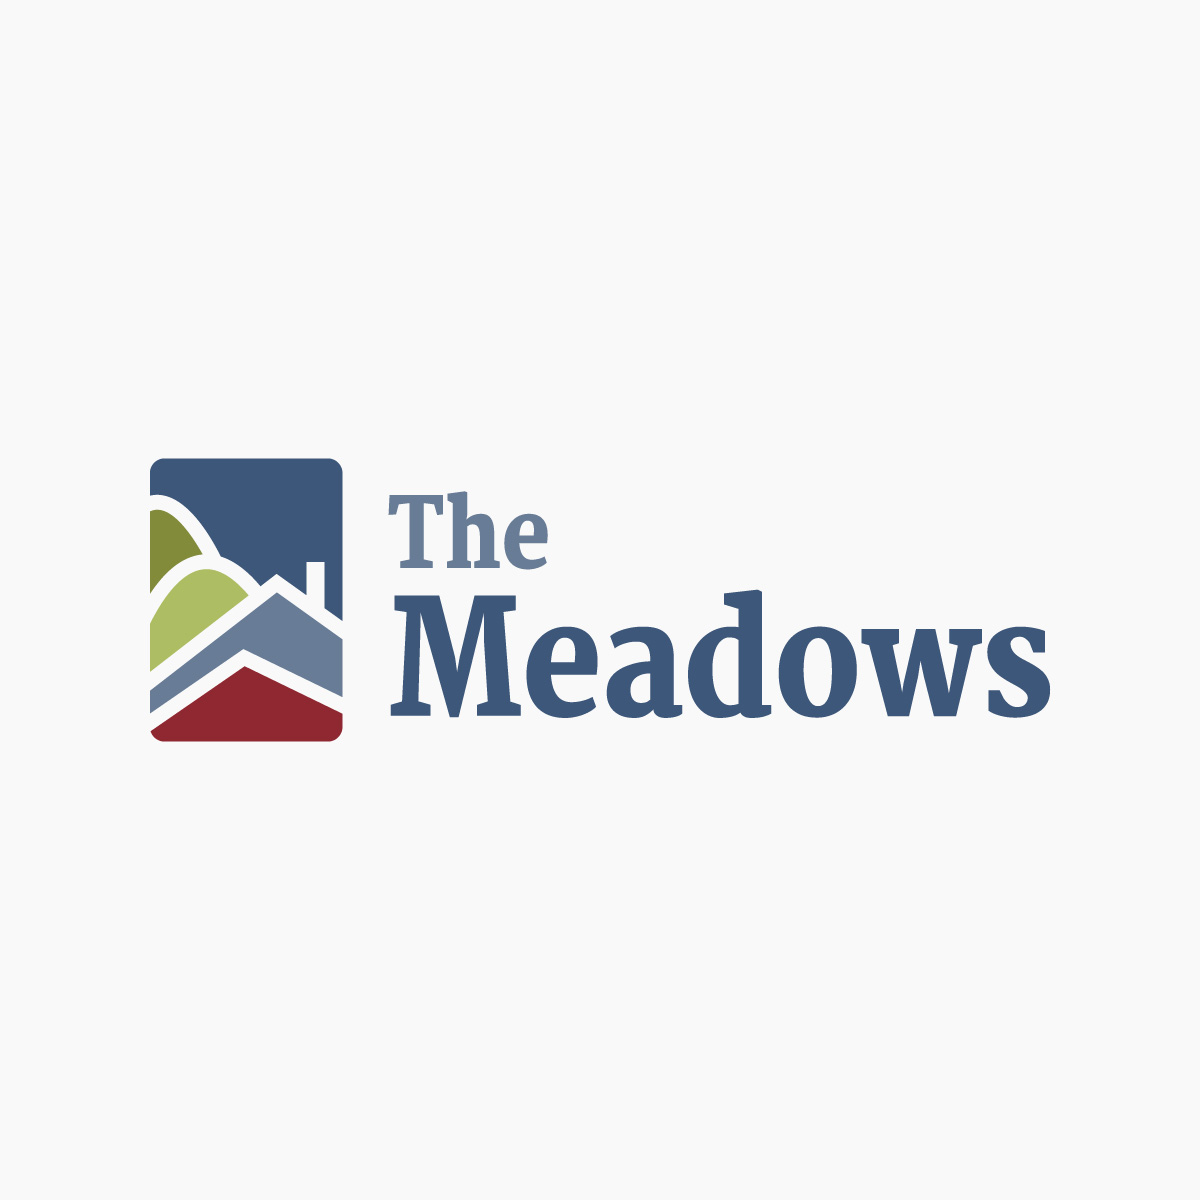 nohands-logo-design-the-meadows